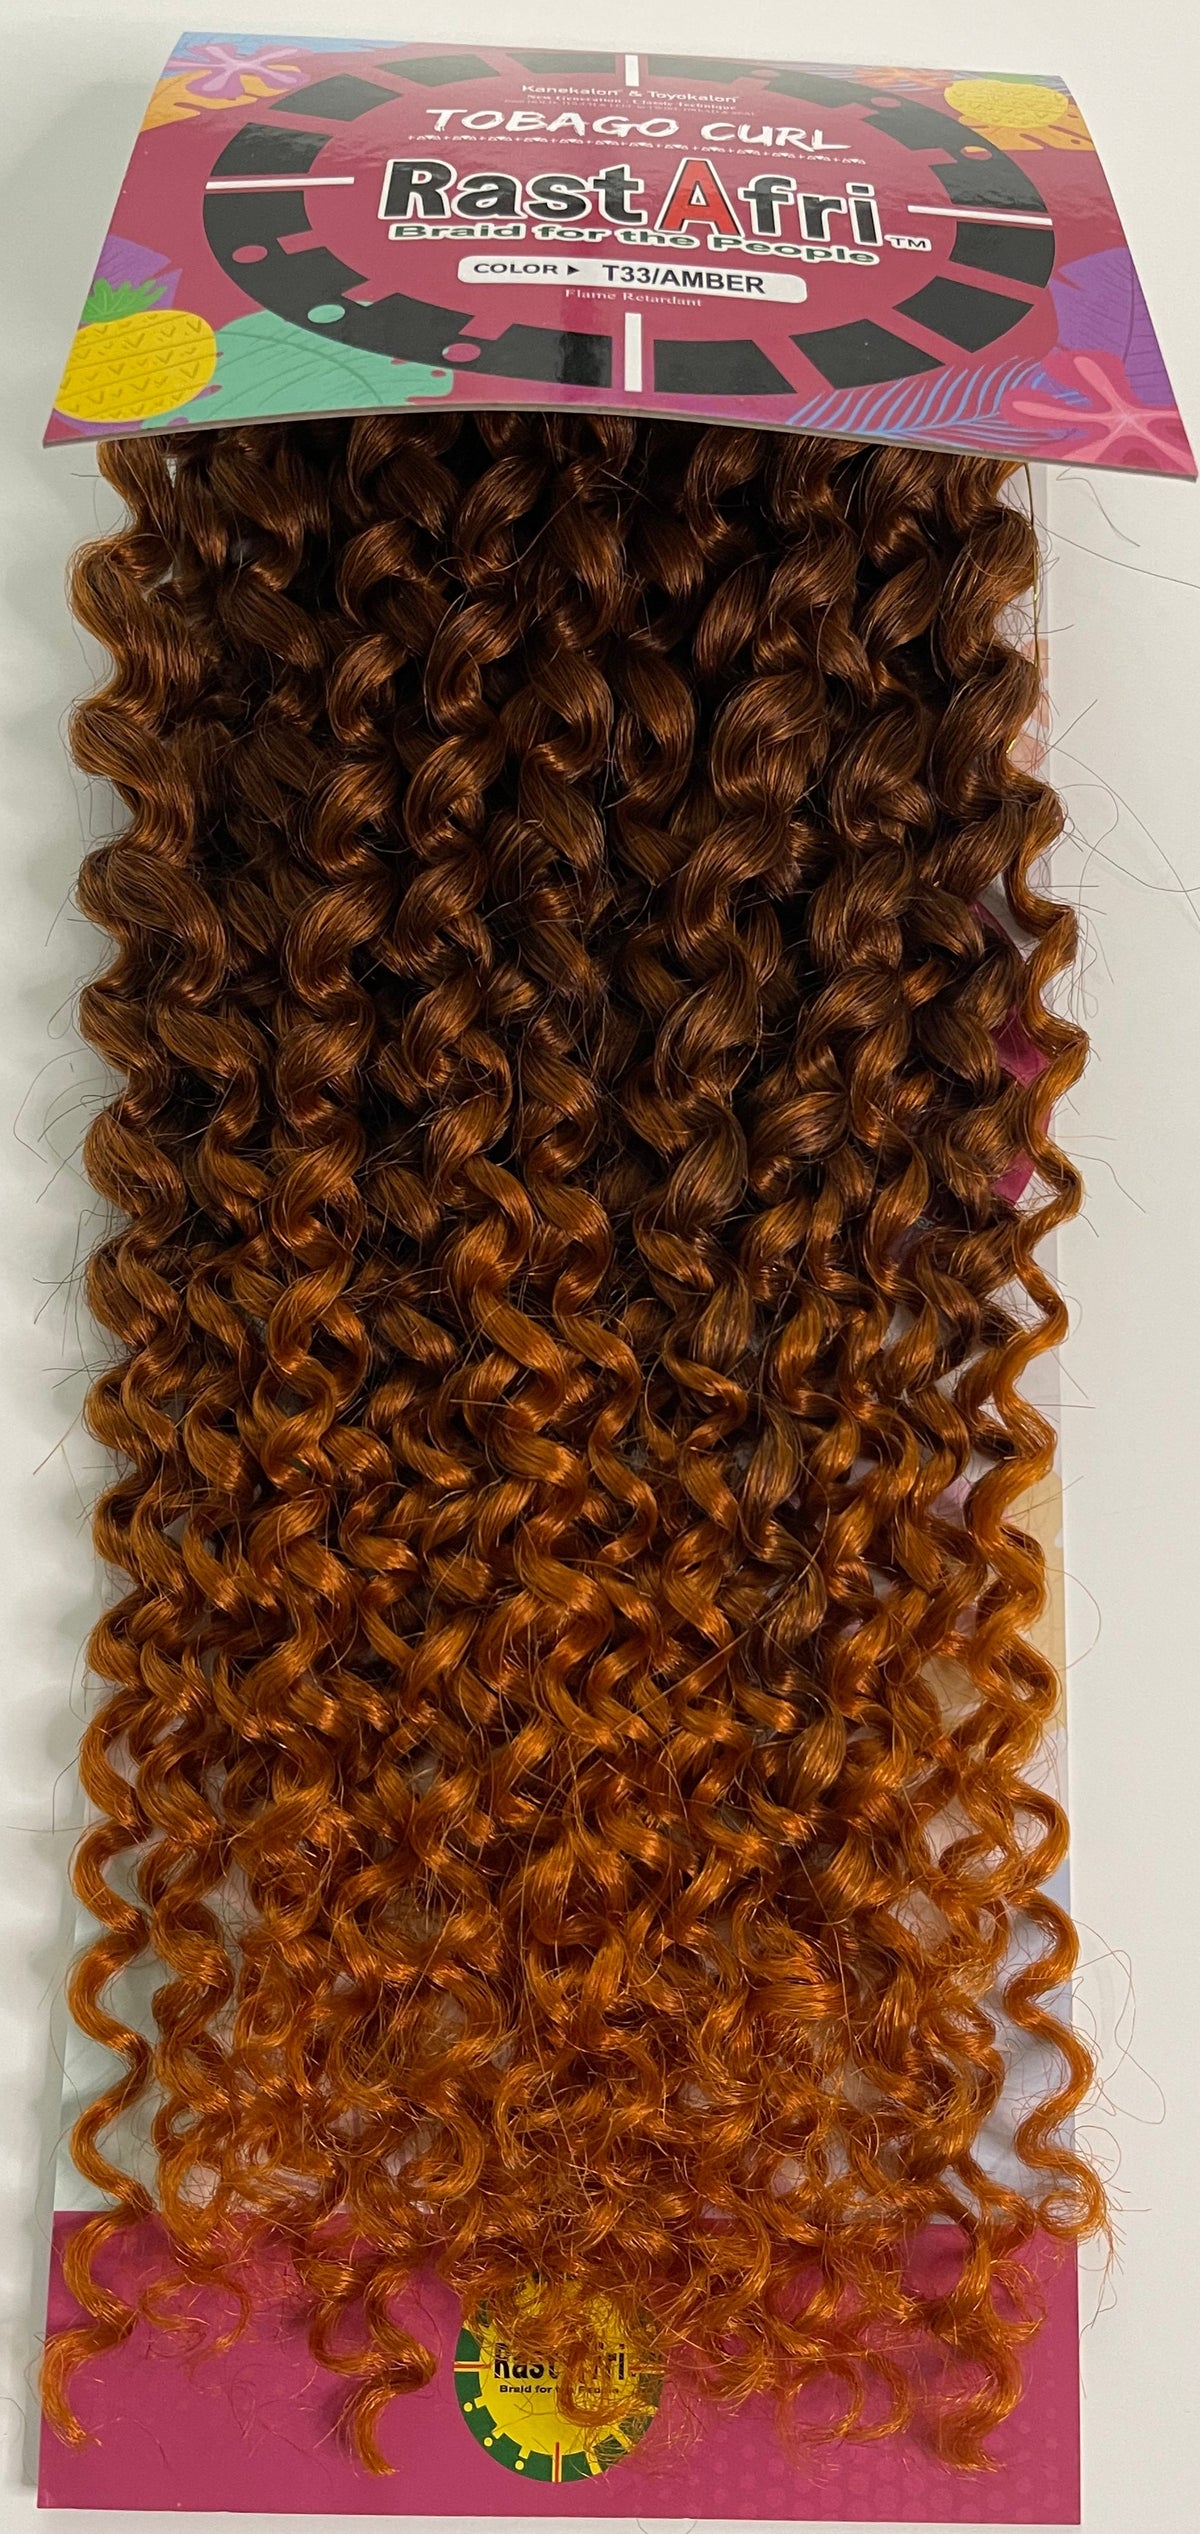 Rastafri Tobago Curl Crochet Braid T33/Amber